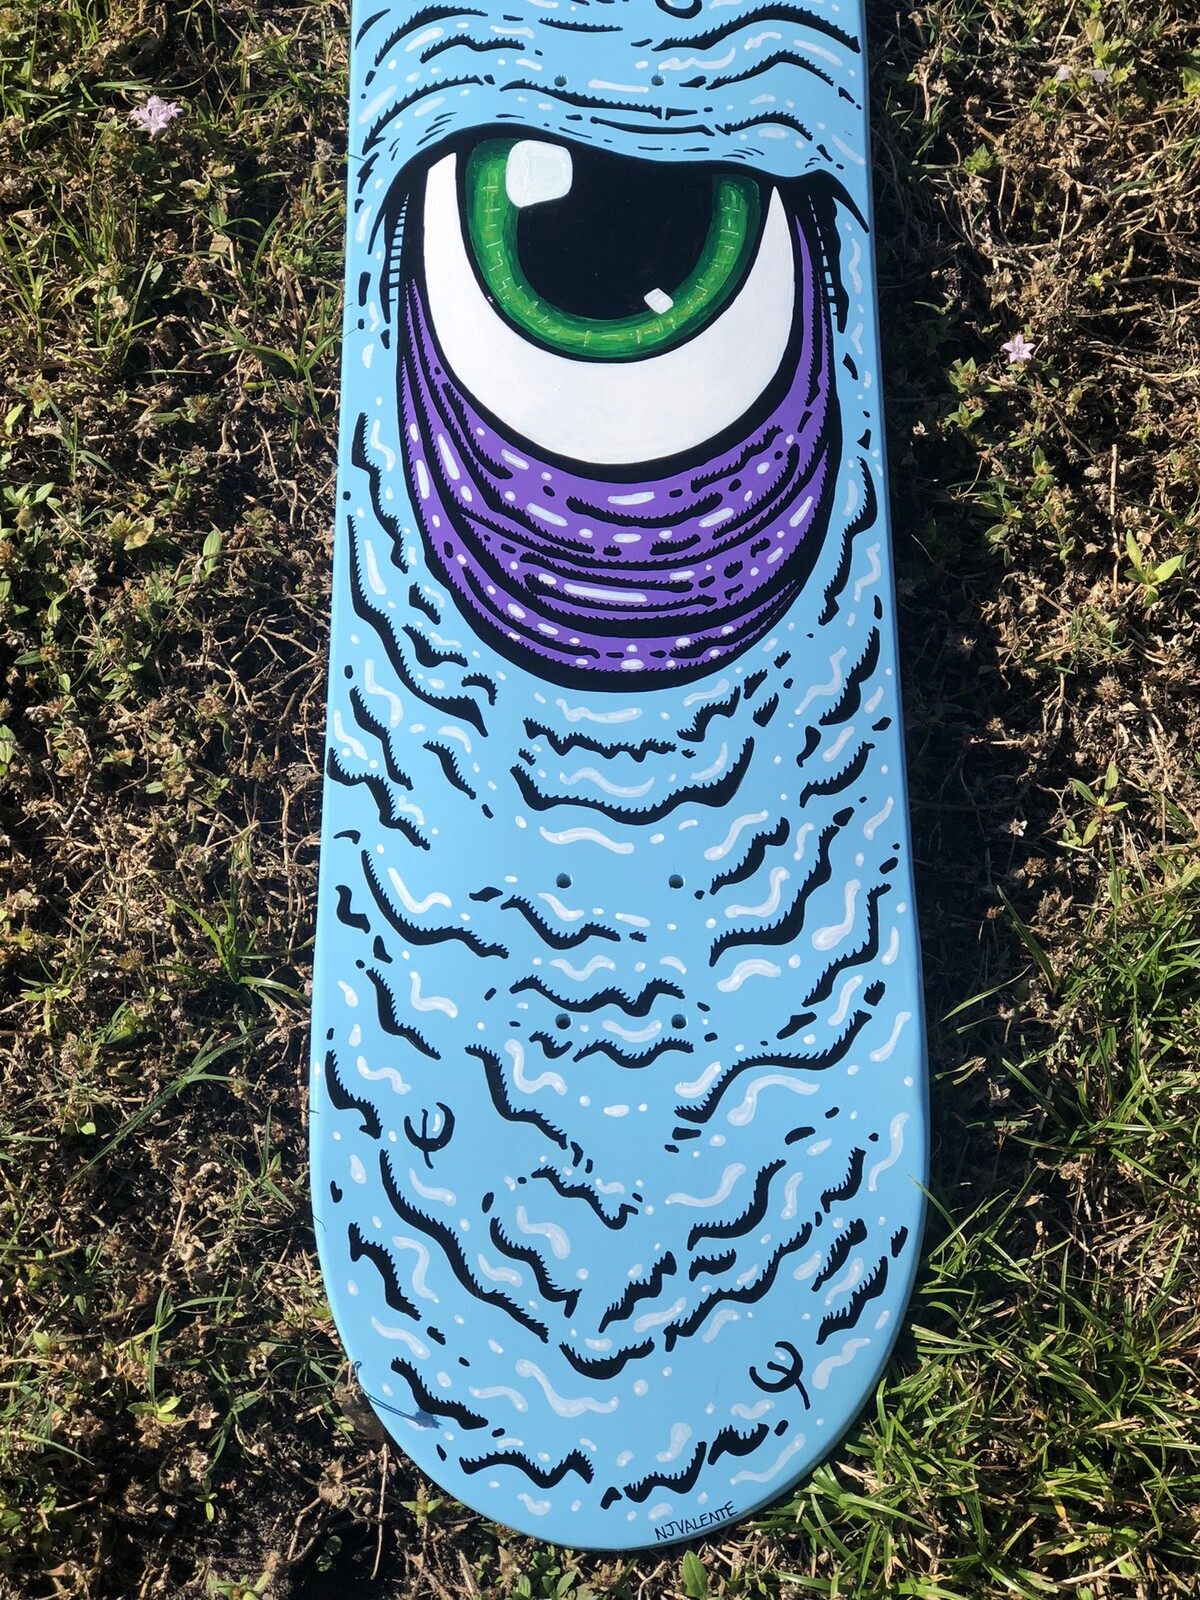 Funky Face Eyeball skateboard